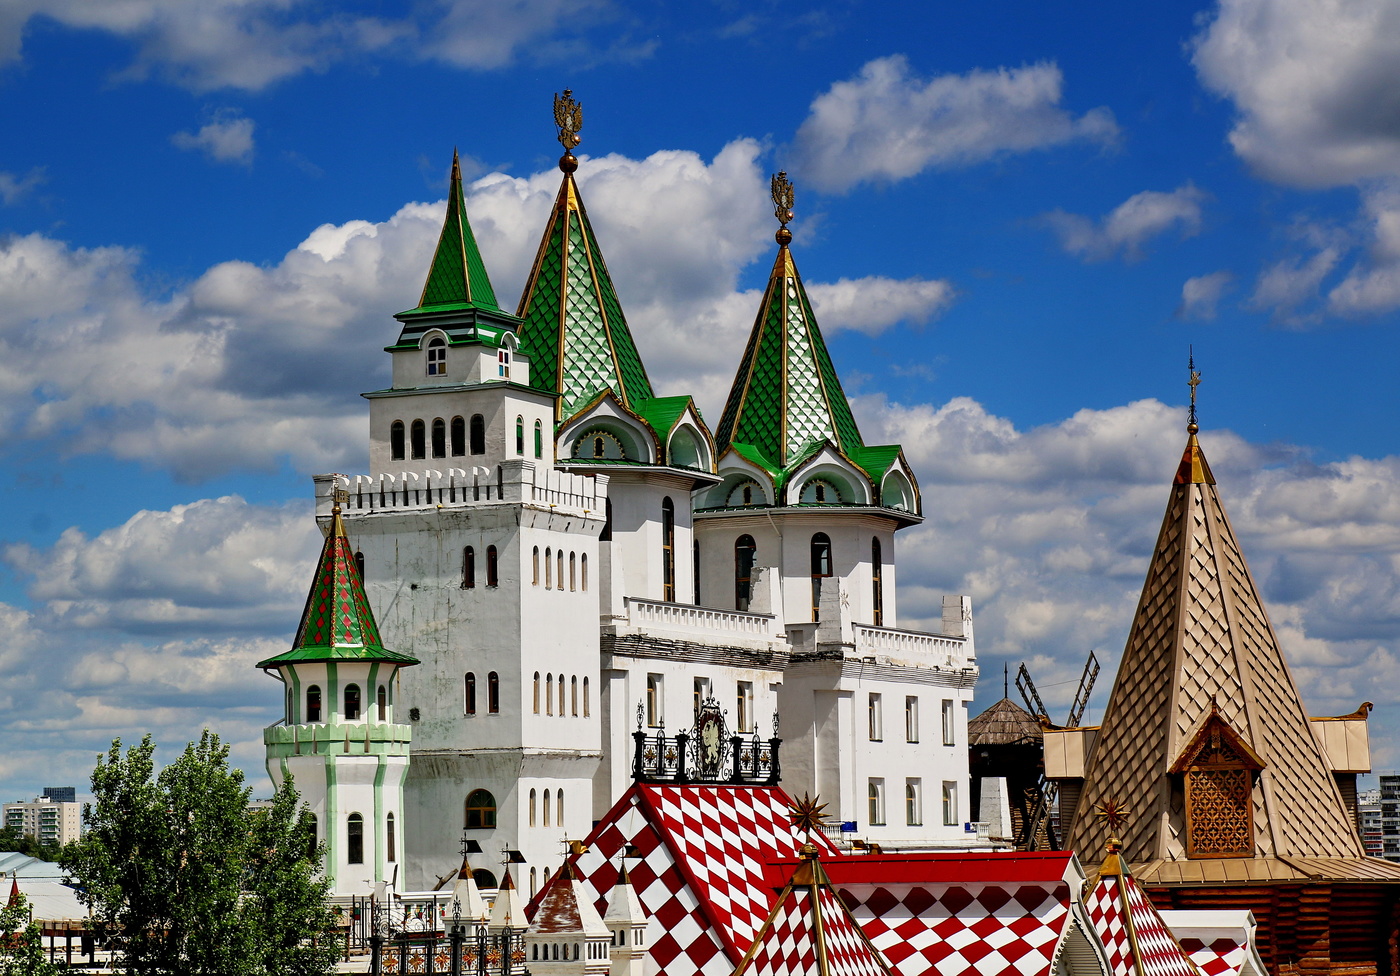 Культурно-развлекательный комплекс «Кремль в Измайлово»